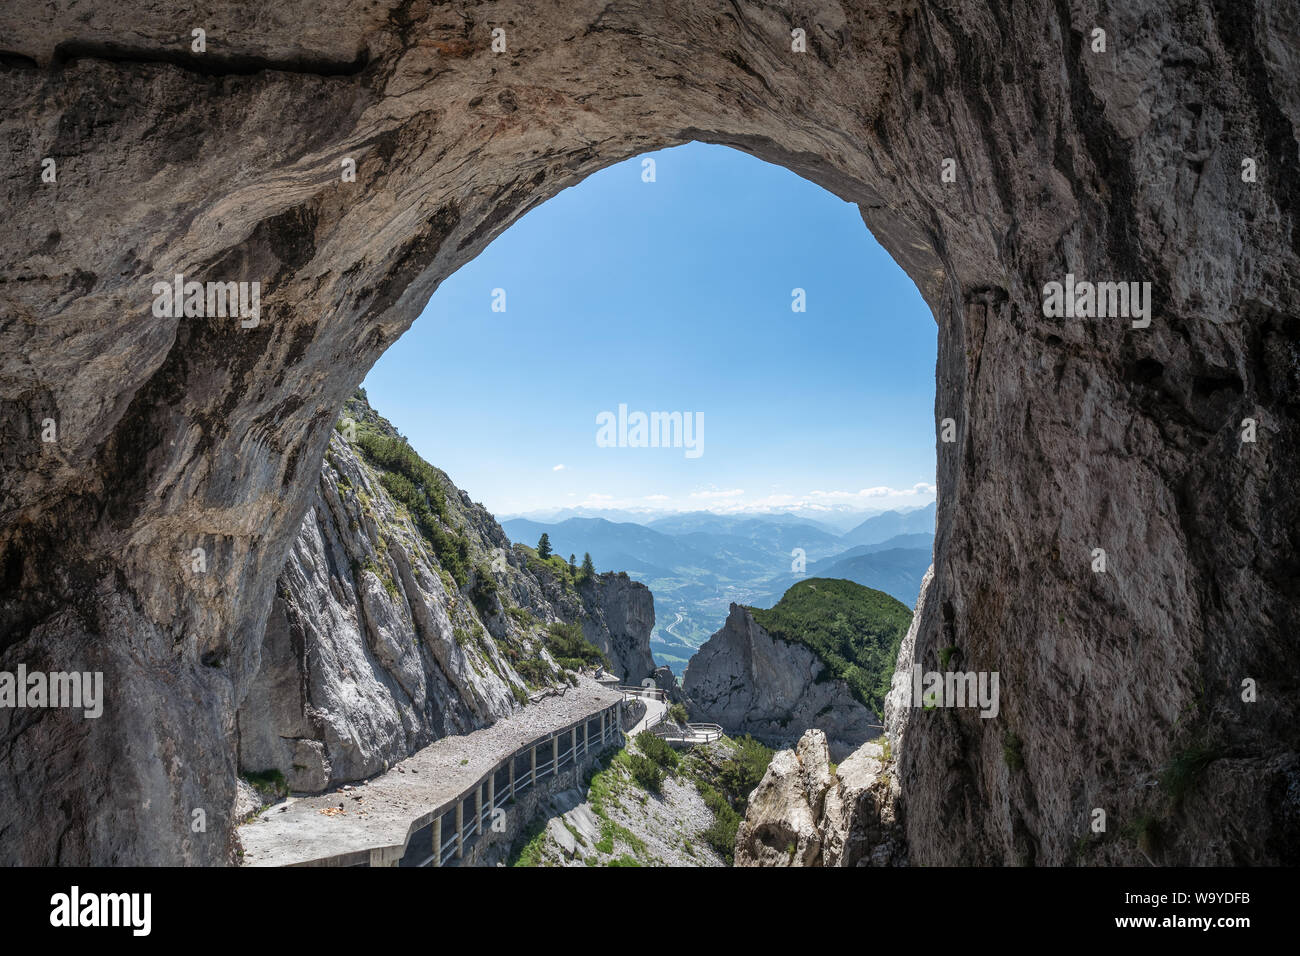 Grotte pittoresque paysage avec montagnes et ciel bleu à bright journée d'été à Werfen, Autriche. Le trou de la grotte de glace. Banque D'Images